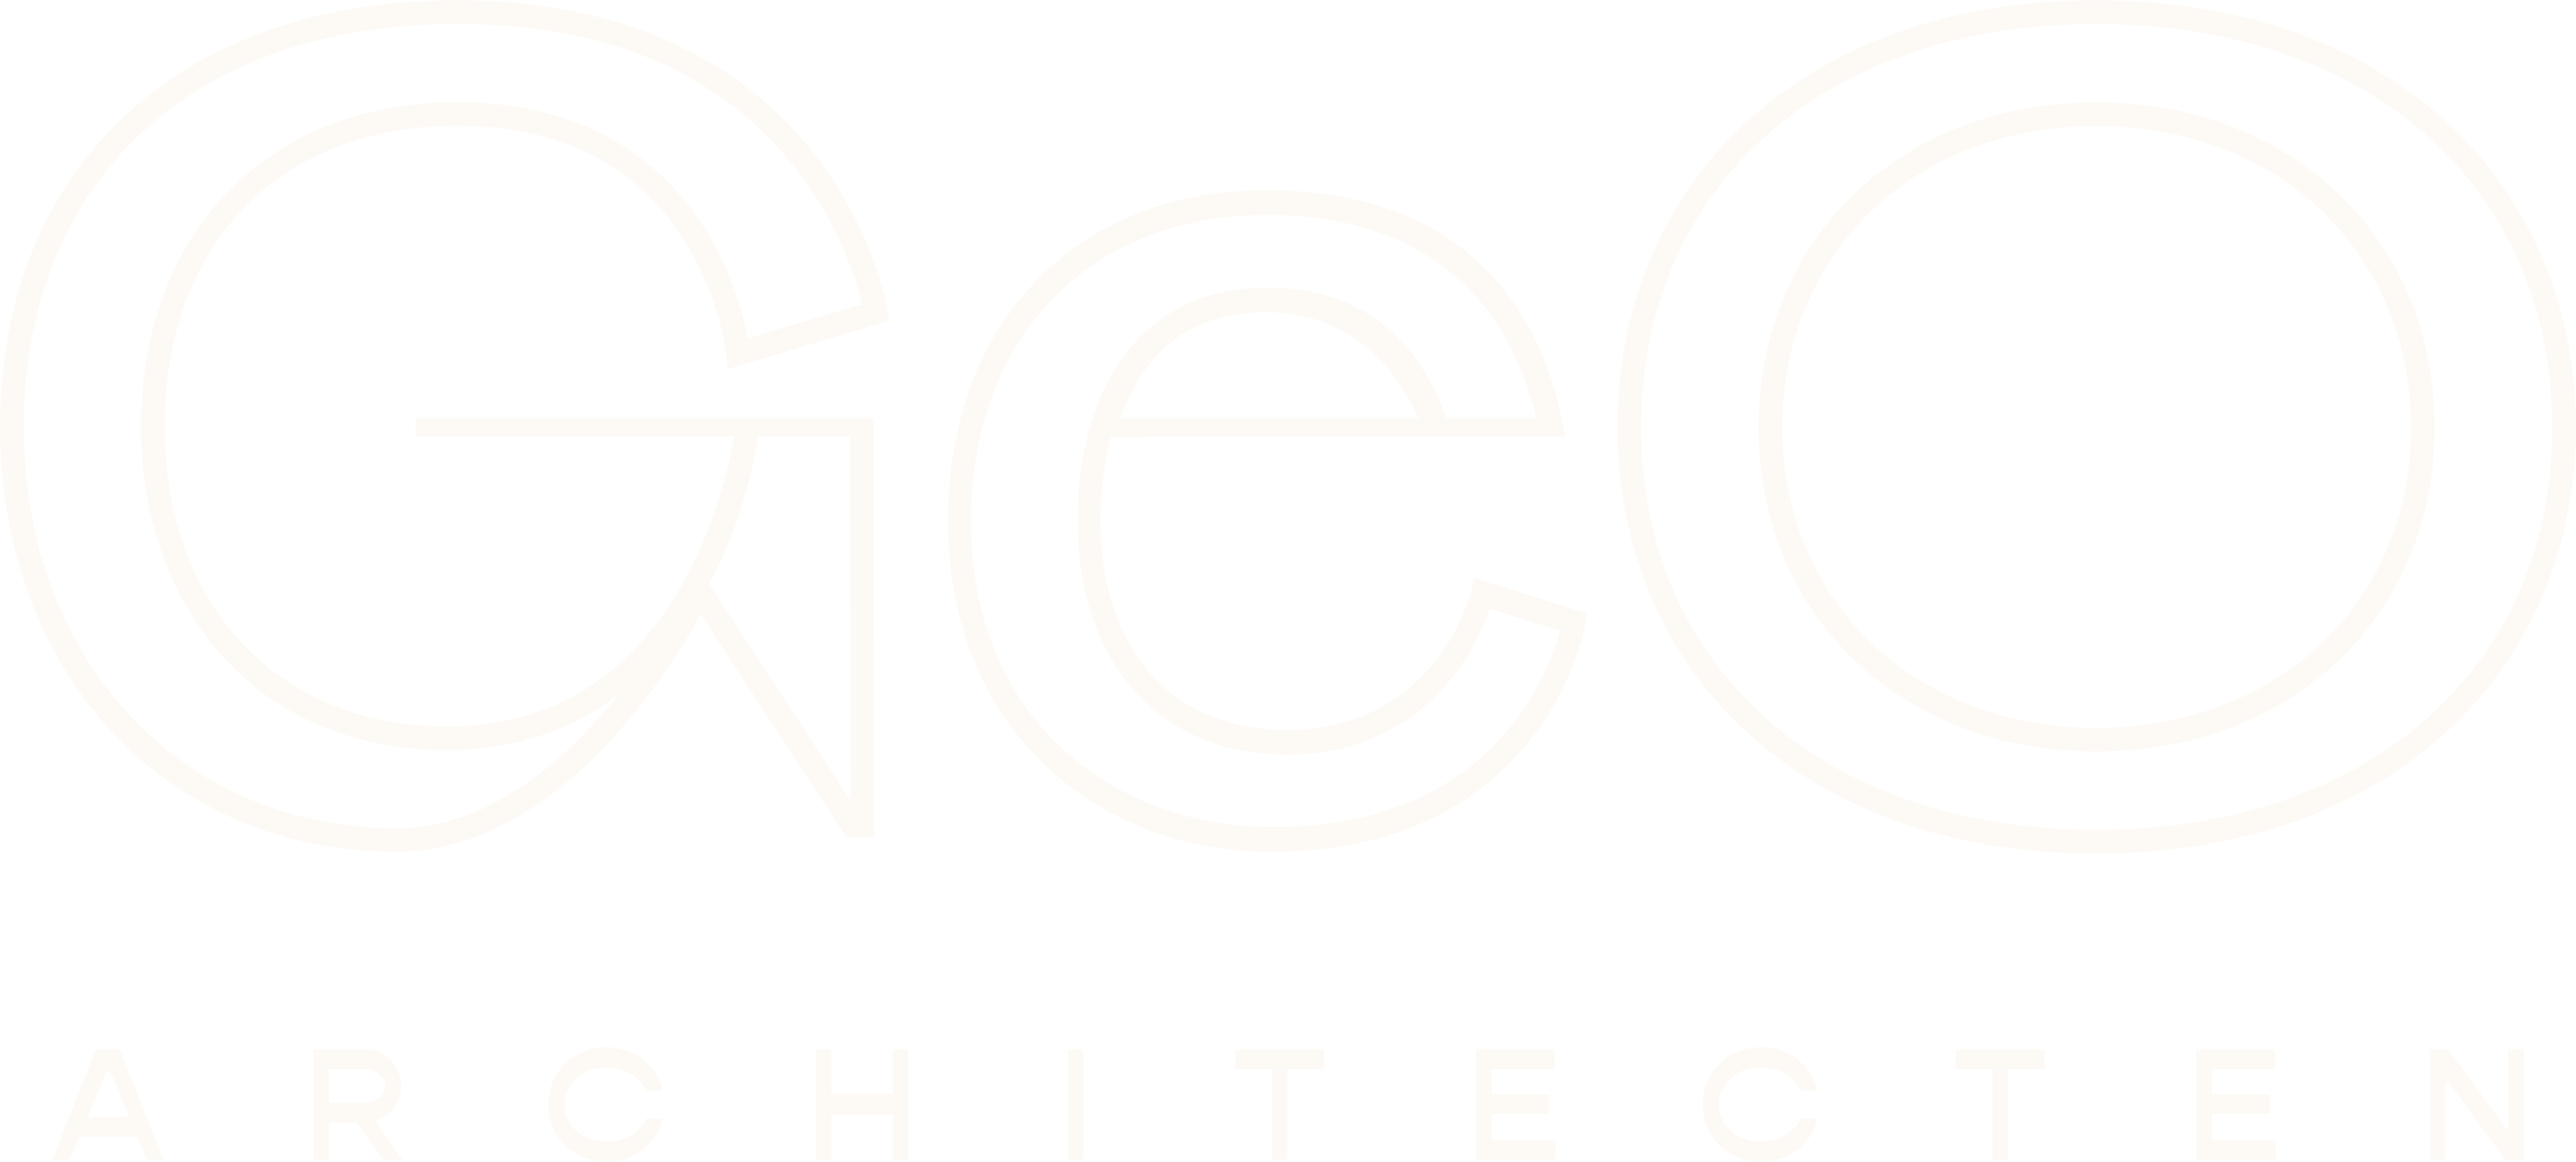 GeO architecten logo welkom aan de tekentafel van morgen